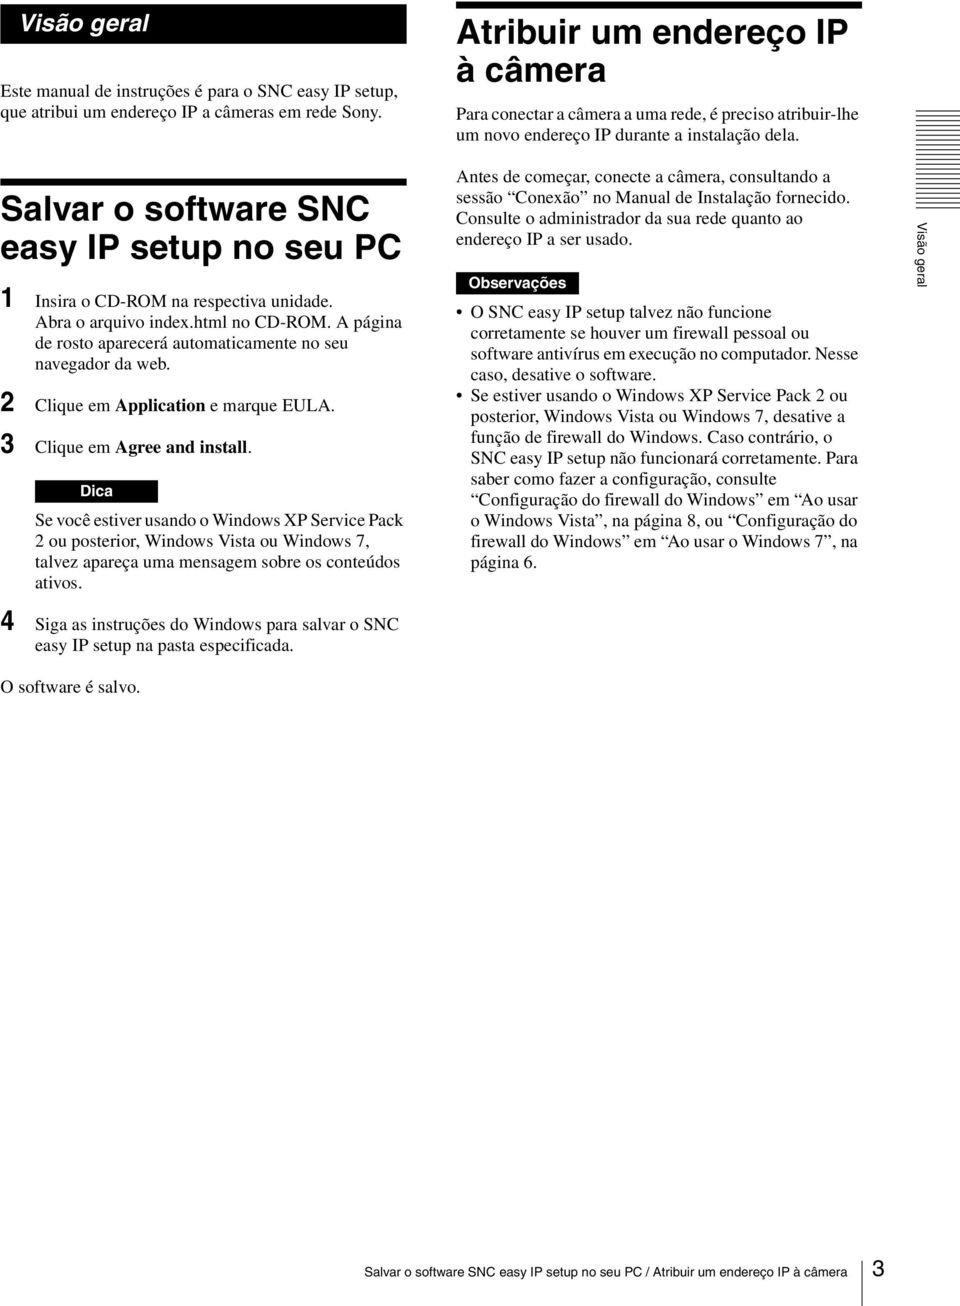 Salvar o software SNC easy IP setup no seu PC 1 Insira o CD-ROM na respectiva unidade. Abra o arquivo index.html no CD-ROM. A página de rosto aparecerá automaticamente no seu navegador da web.